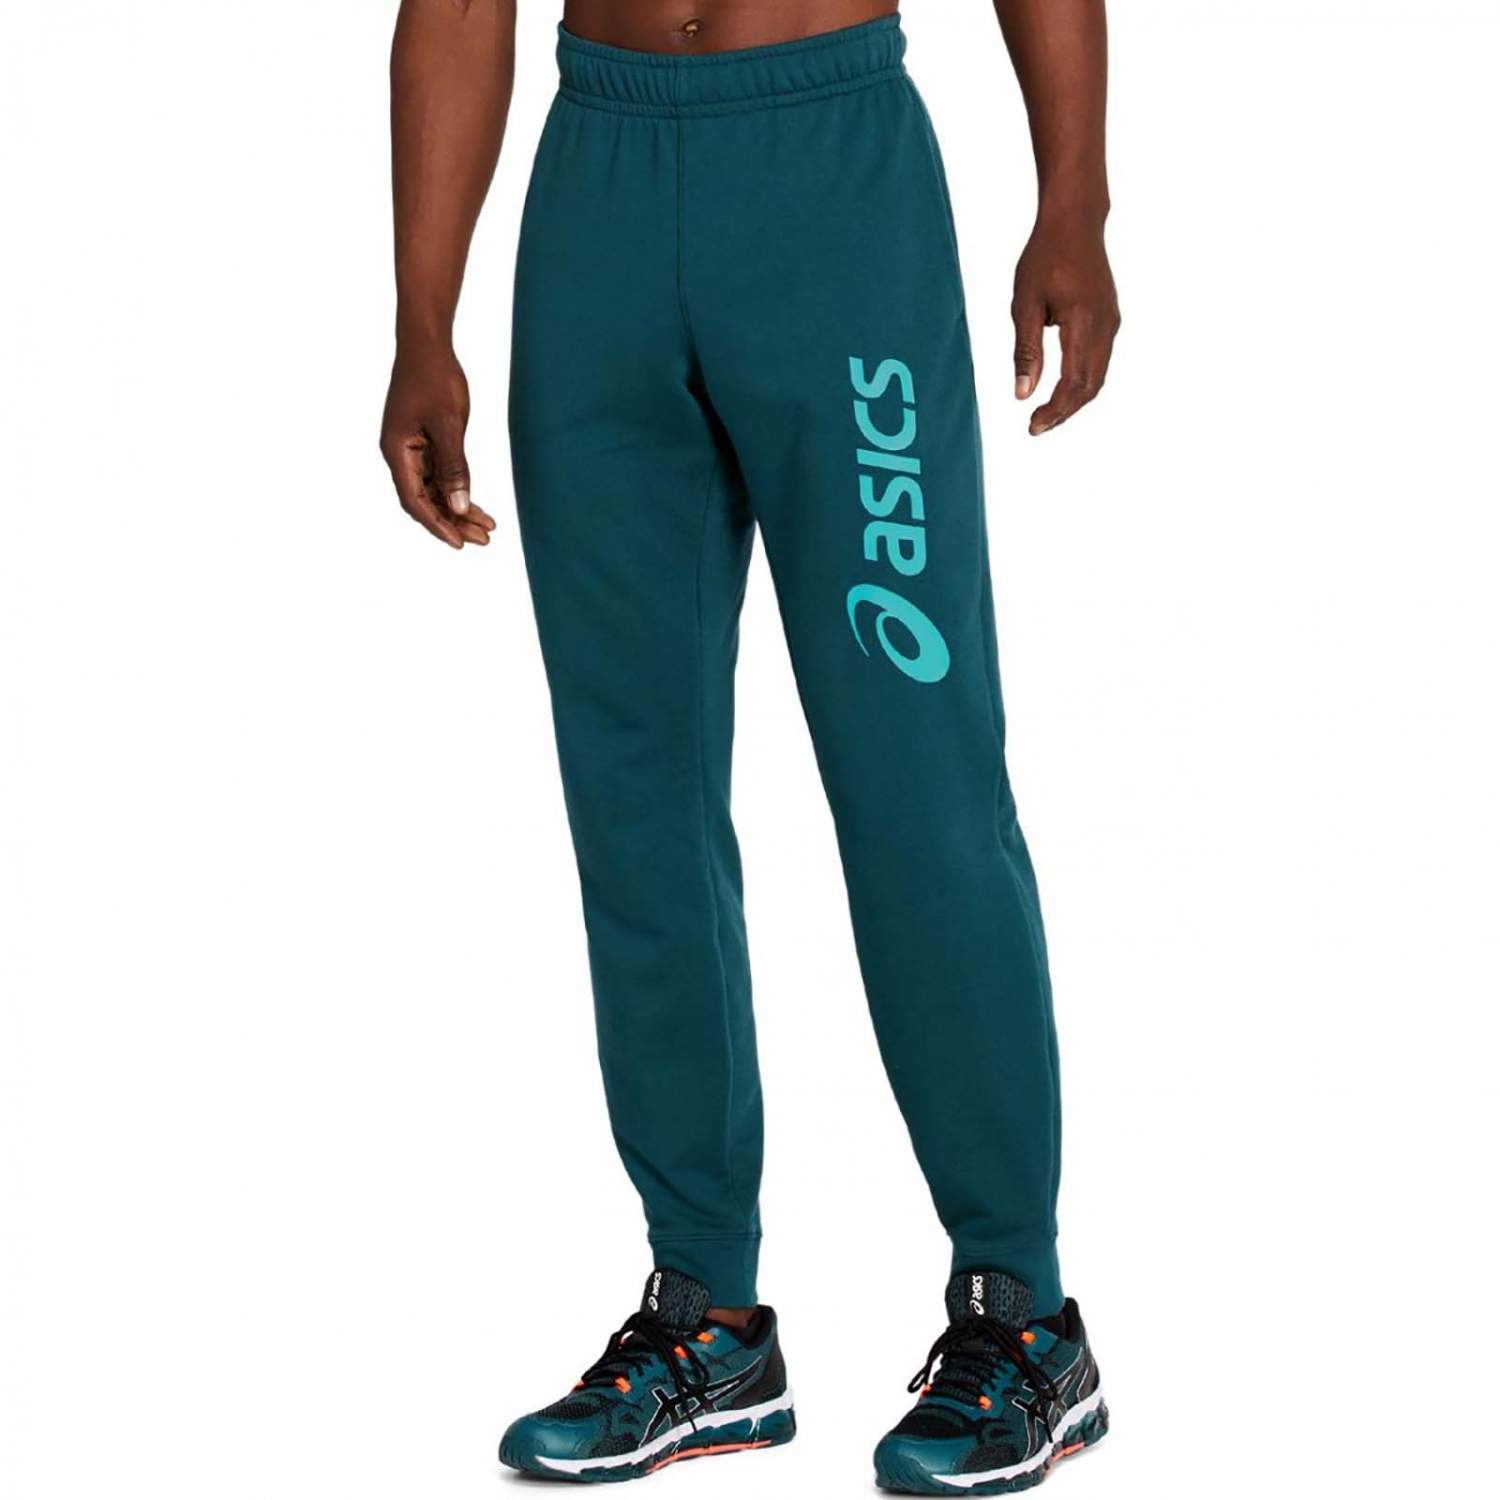 Спортивные брюки мужские Asics ASICS BIG LOGO SWEAT PANT синие S - купить вМоскве, цены на Мегамаркет